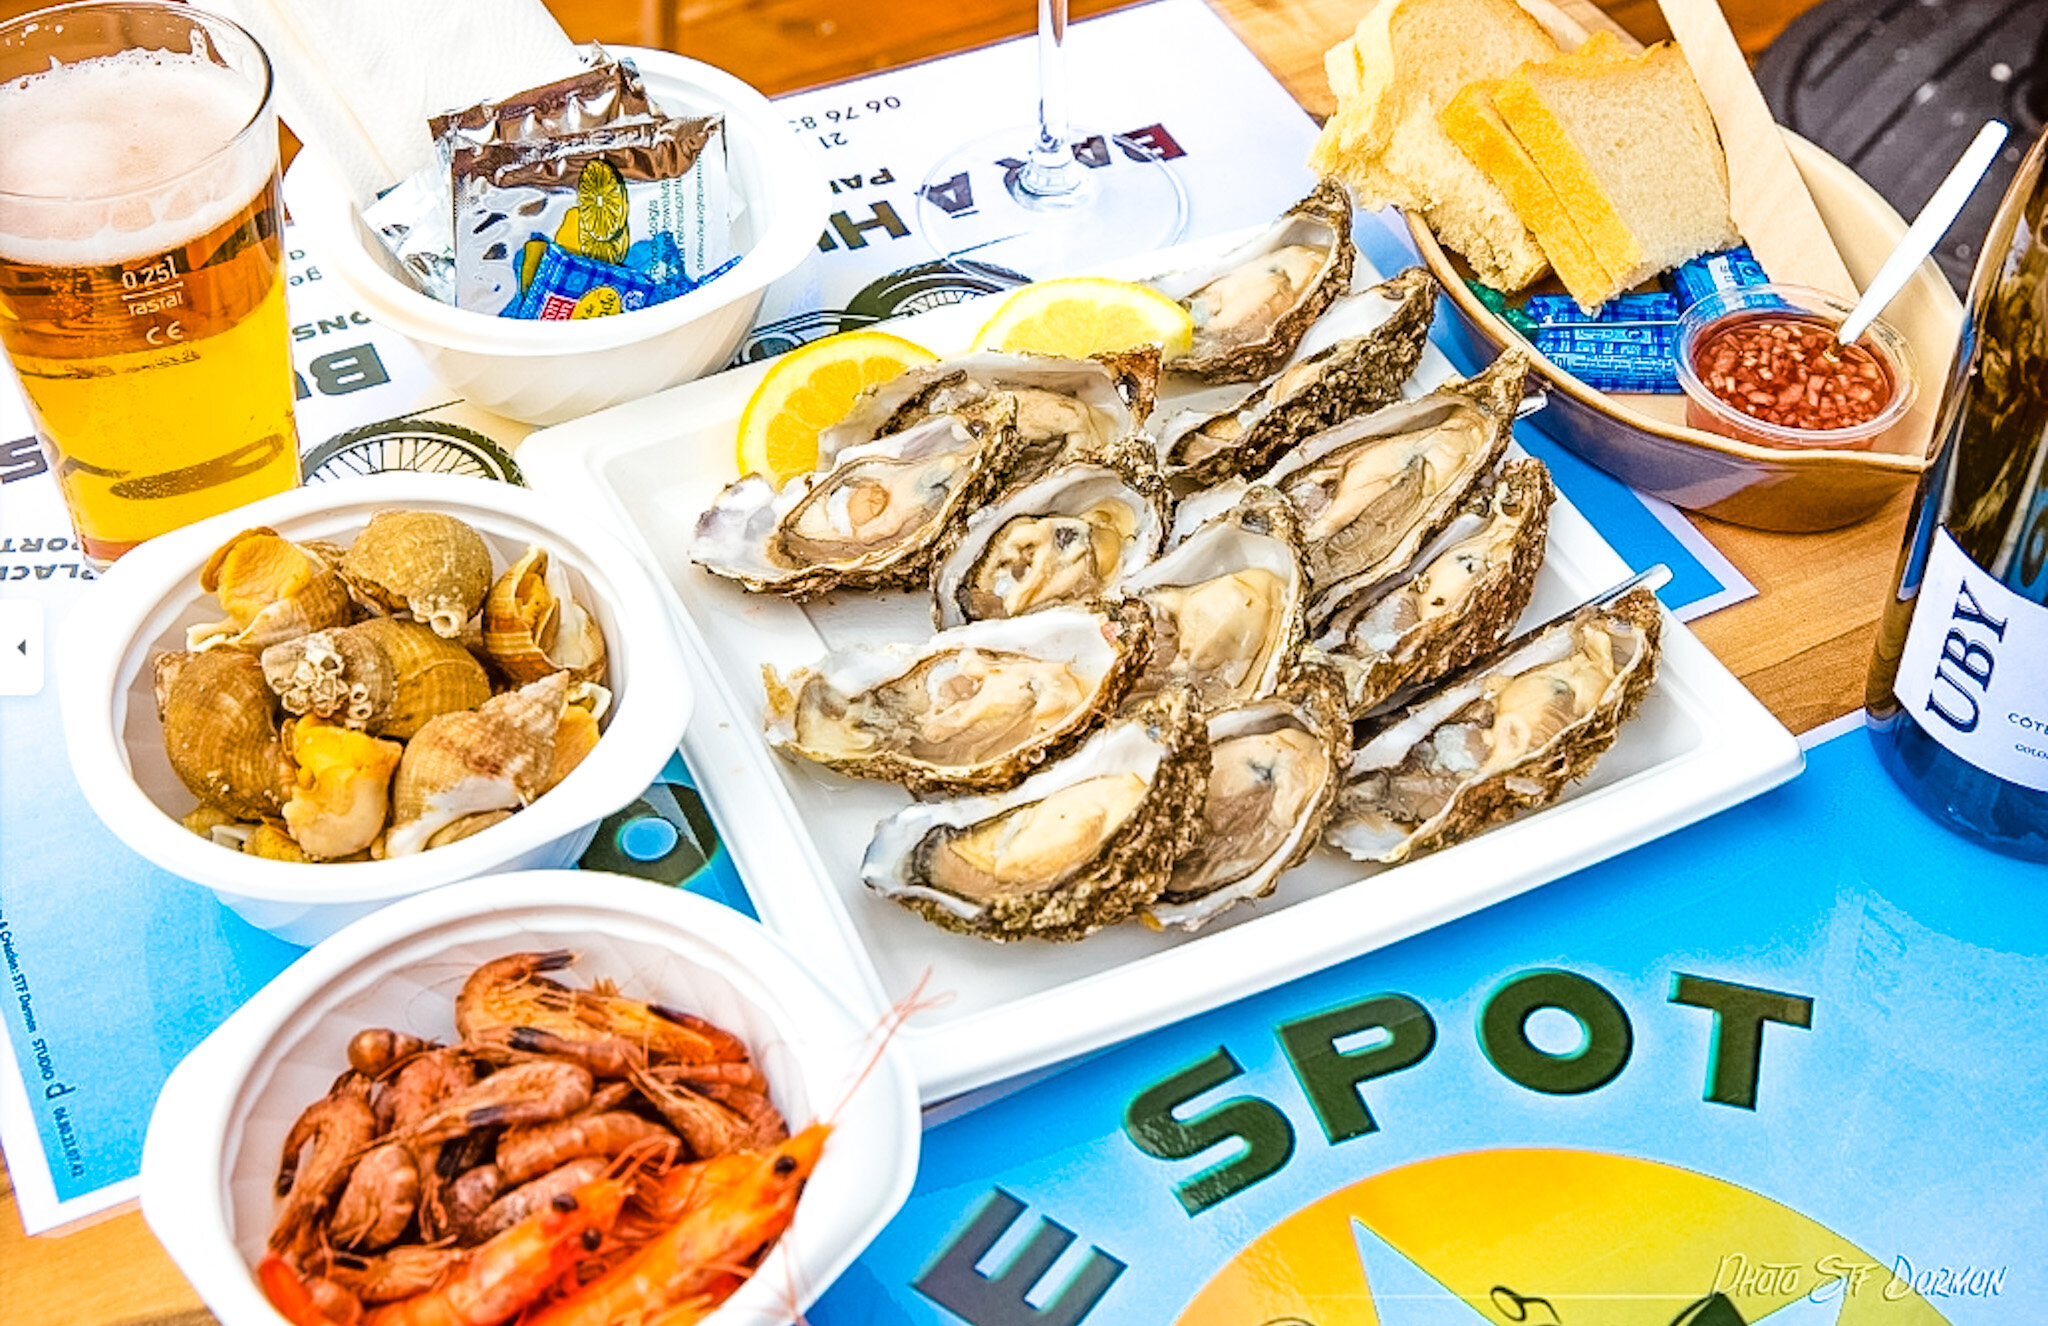 Le Spot 62 Portel Boulogne-sur-Mer Côte d'Opale bar restaurant bar à huîtres